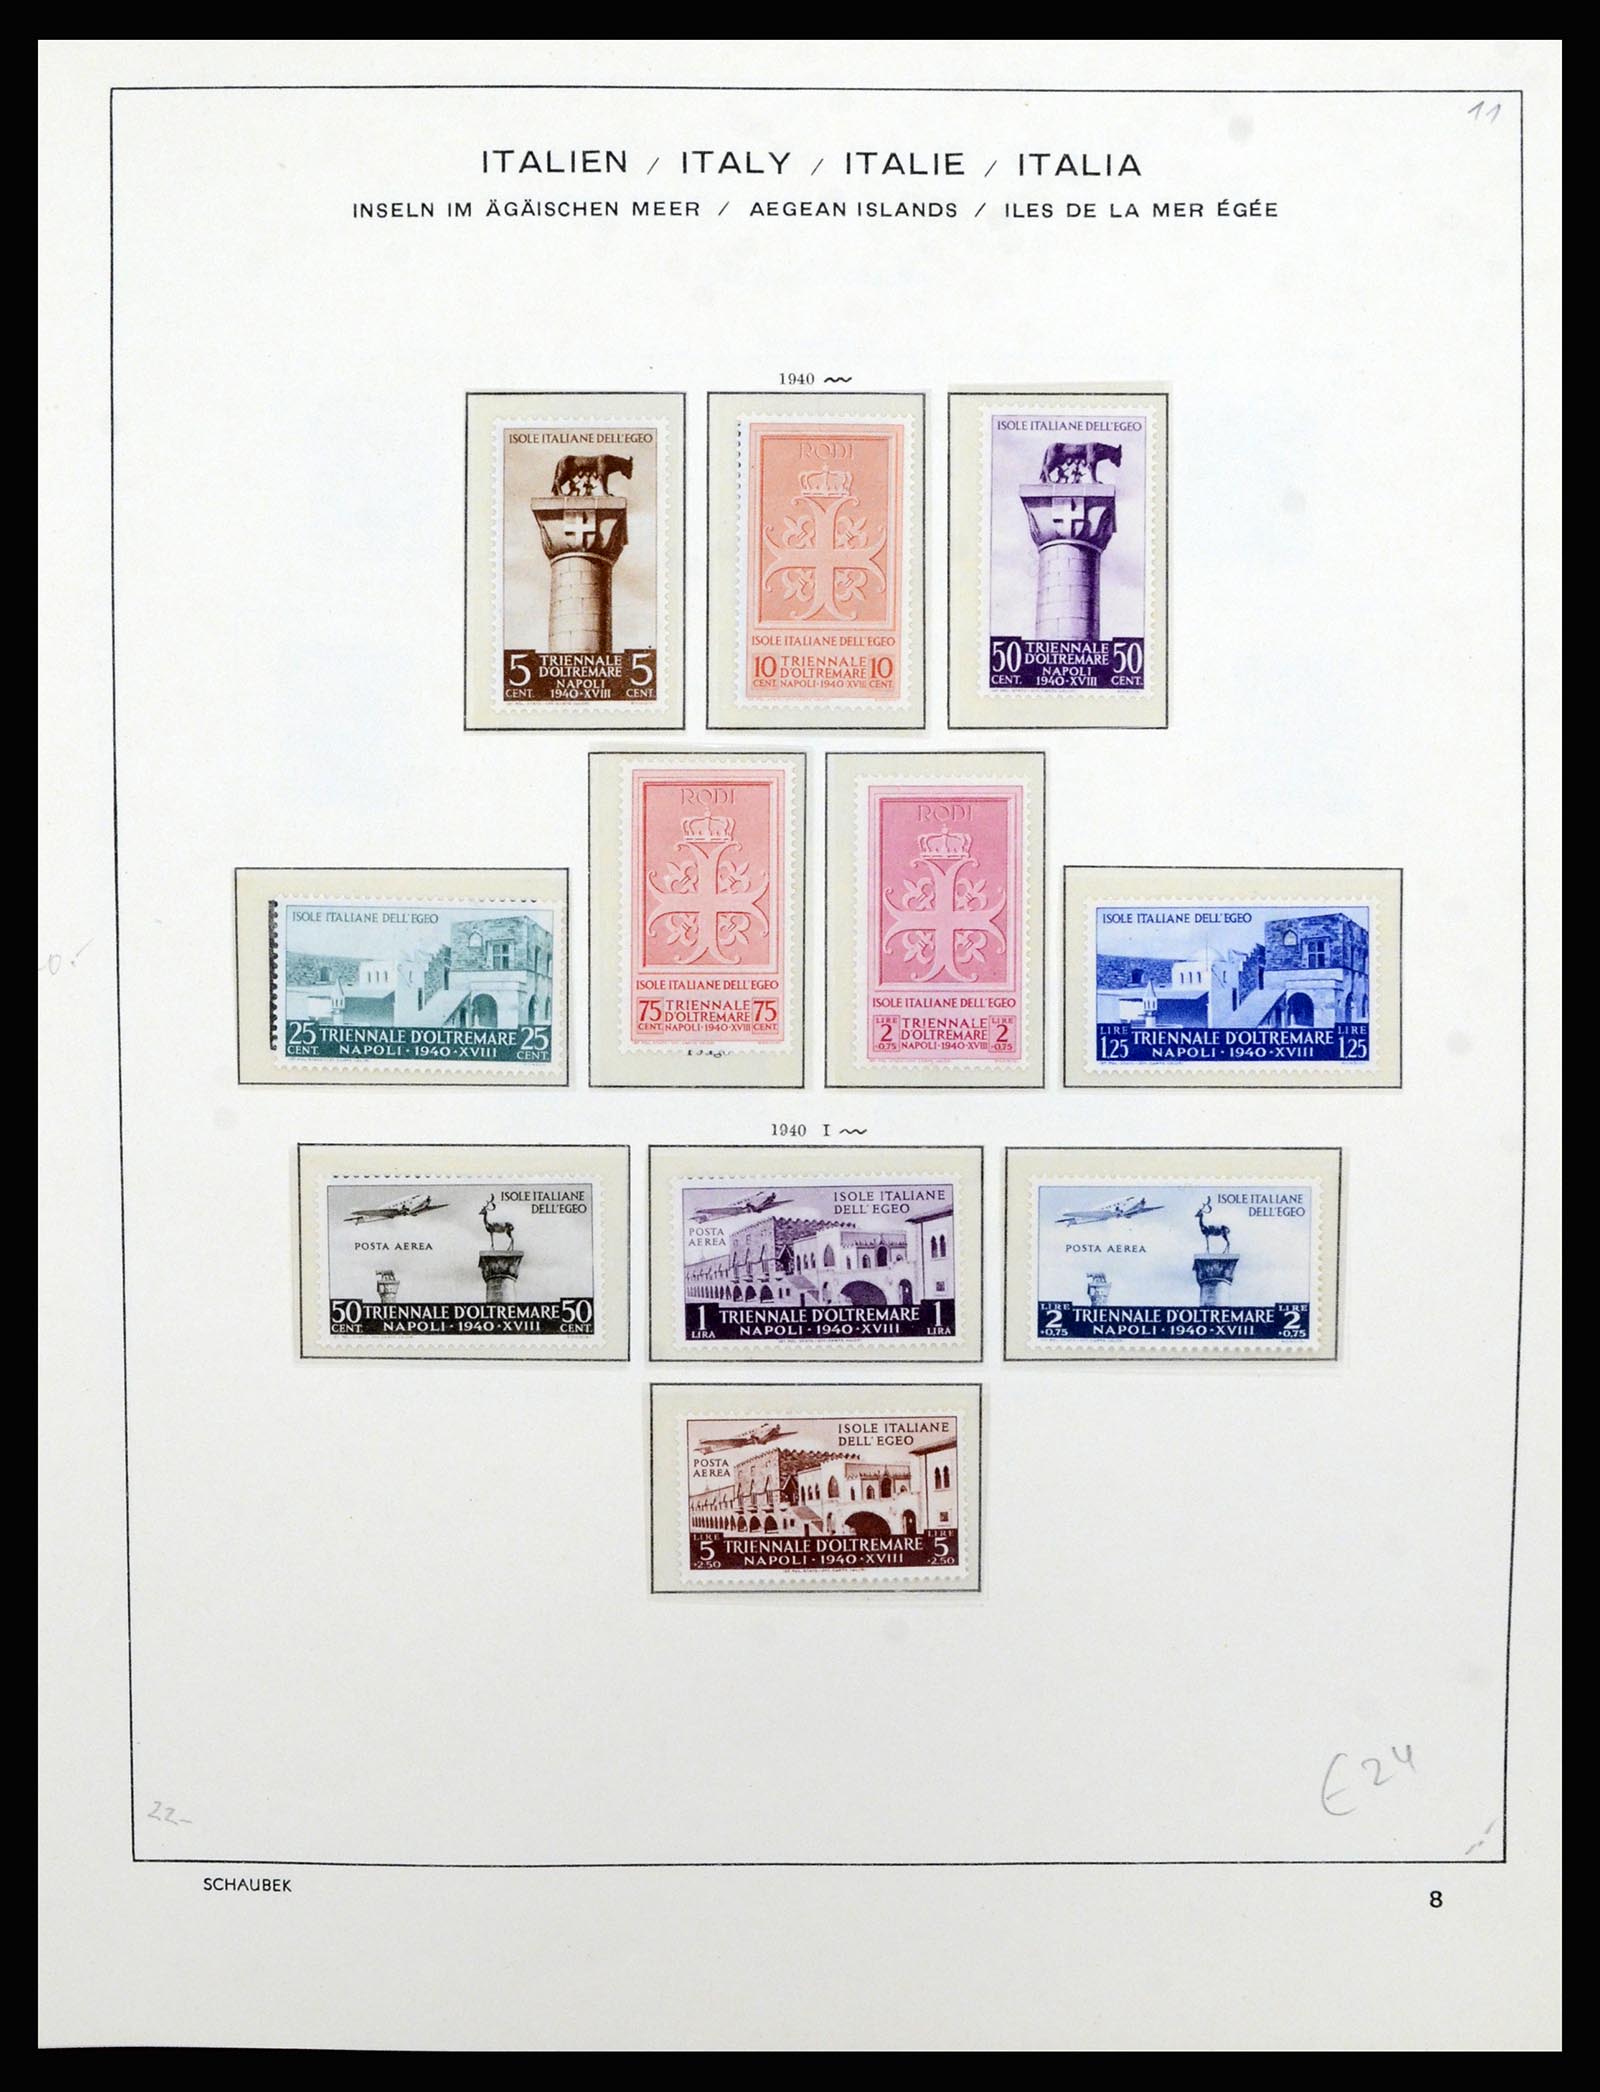 36577 034 - Stamp collection 36577 Italiaanse gebieden 1870-1940.